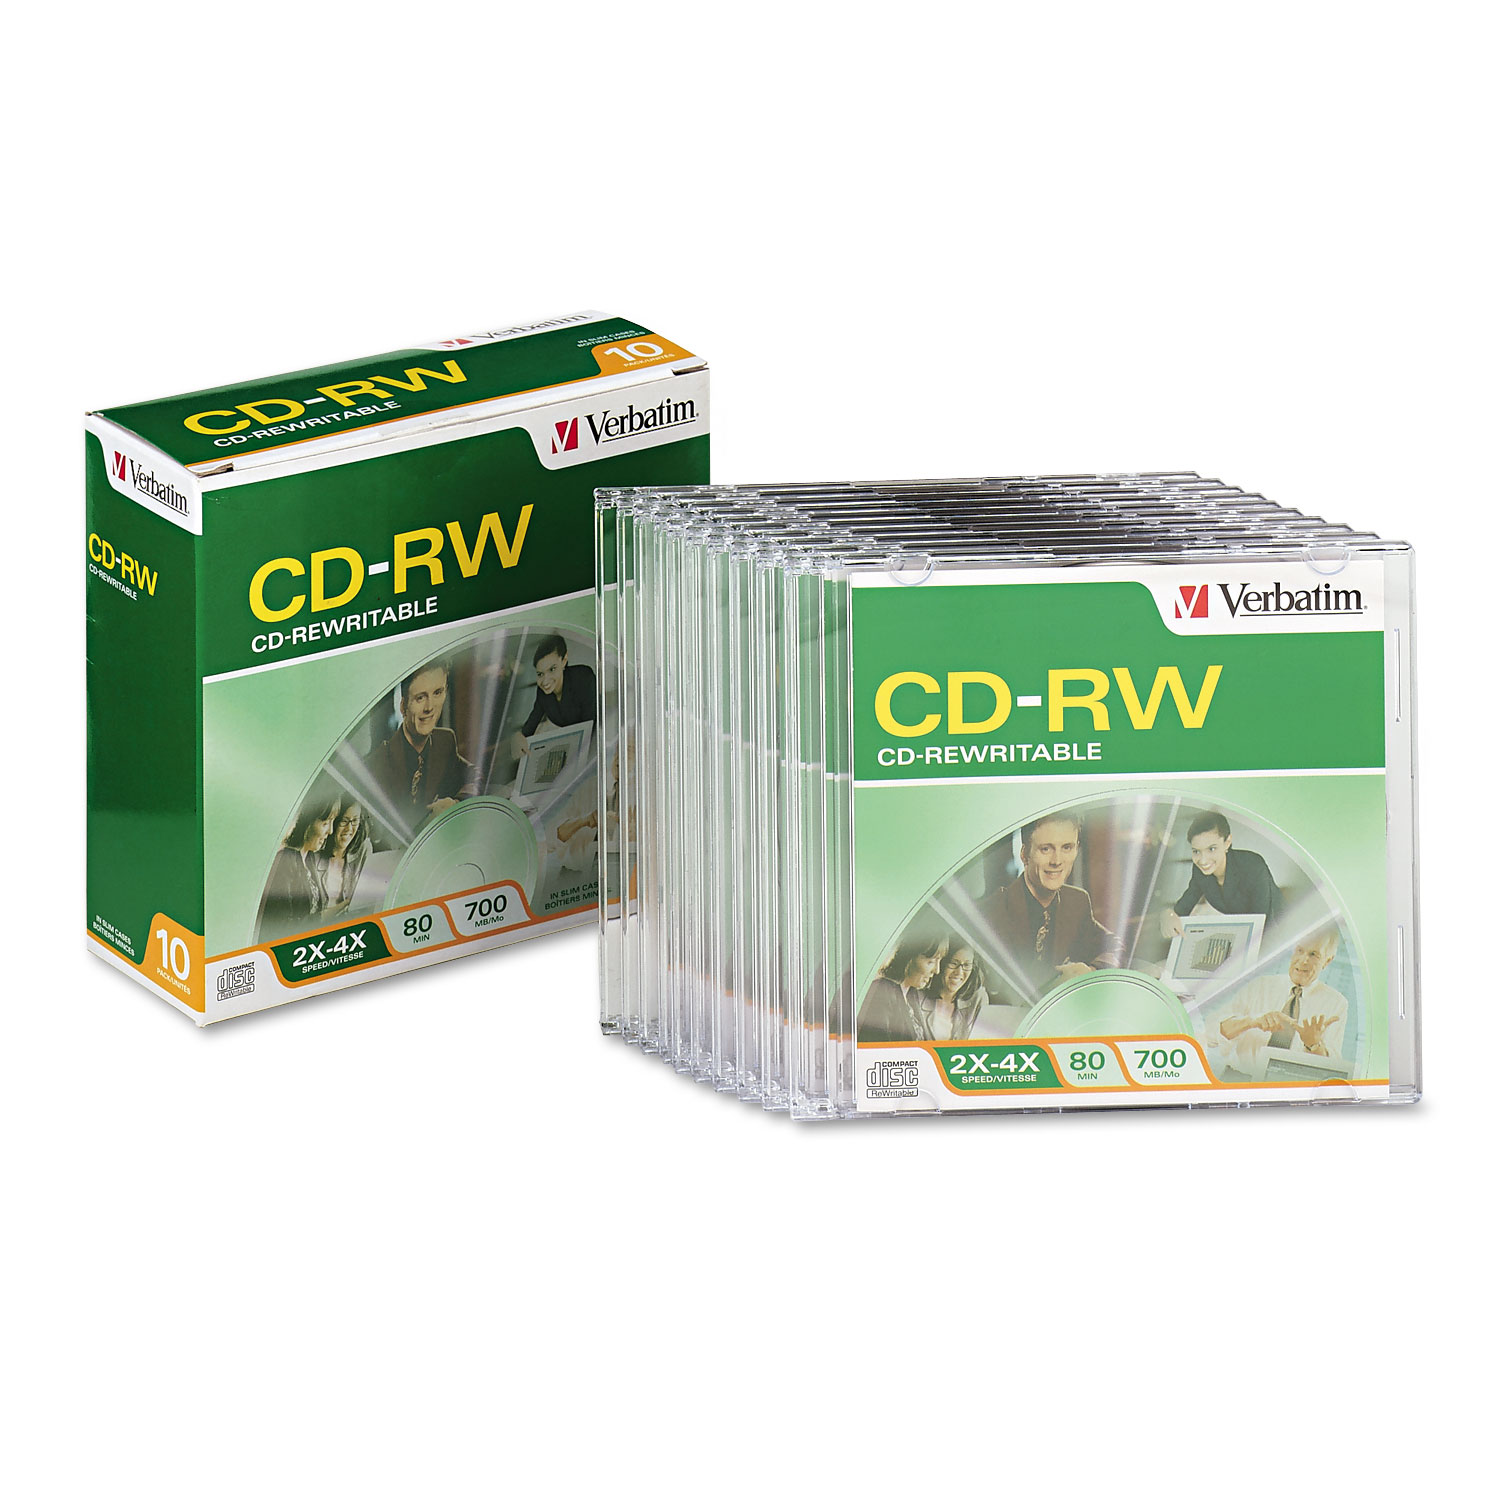 CD-RW Discs, 700MB/80min, 2X/4X, Slim Jewel Case, Matte Silver, 10/Pack